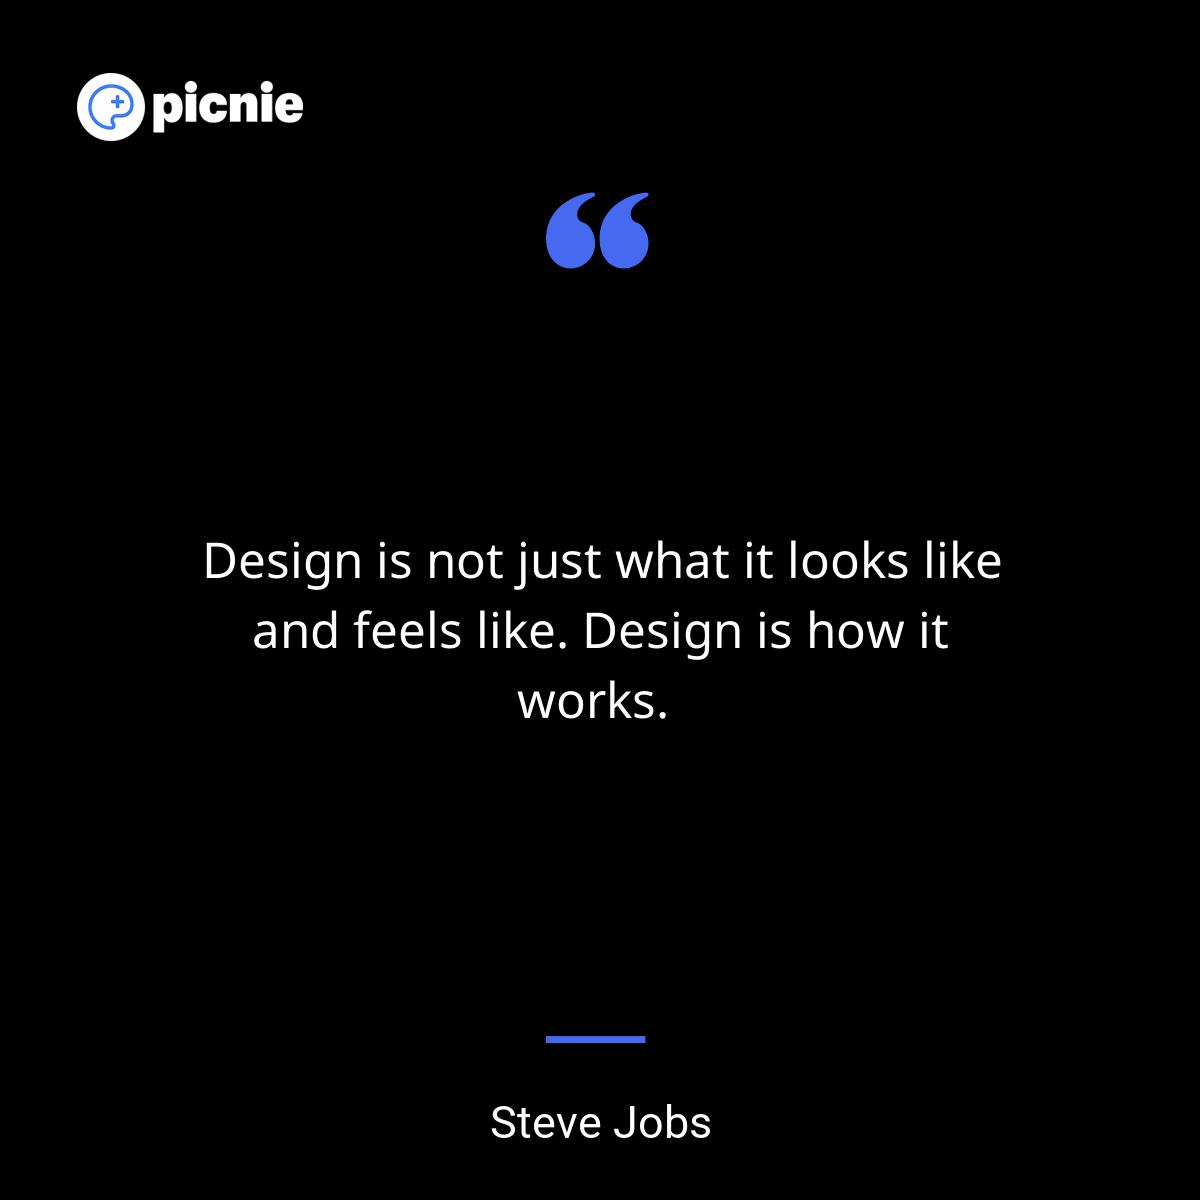 Steve Jobs Quote for Design Linkedin-1020